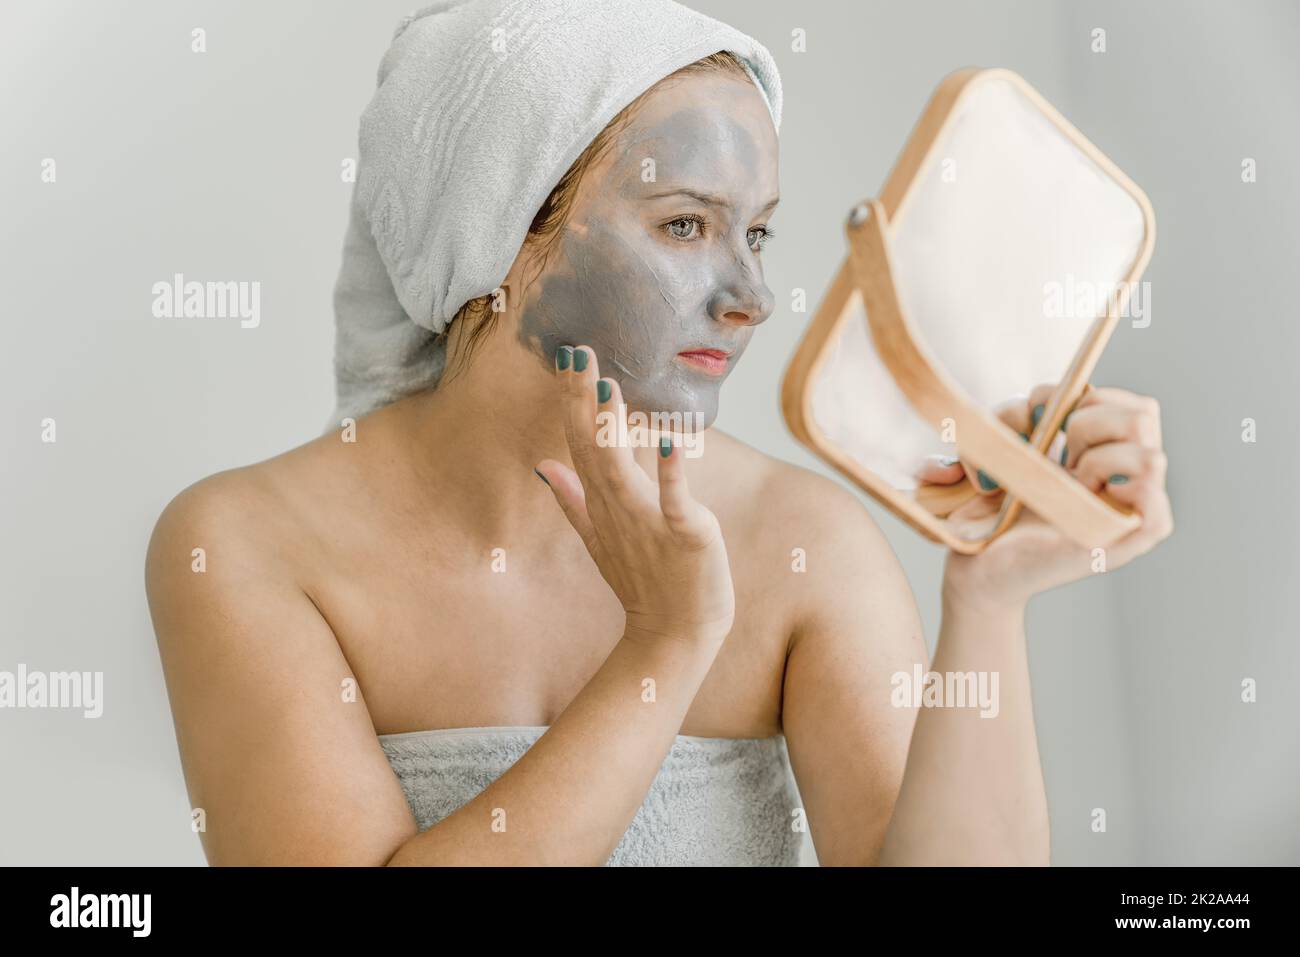 Die junge Frau legt graue kosmetische Tonmaske auf das Gesicht, während sie in den Spiegel schaut, ihr Haar und ihren Körper in ein Handtuch gewickelt, Seitenansicht. Nahaufnahme Stockfoto